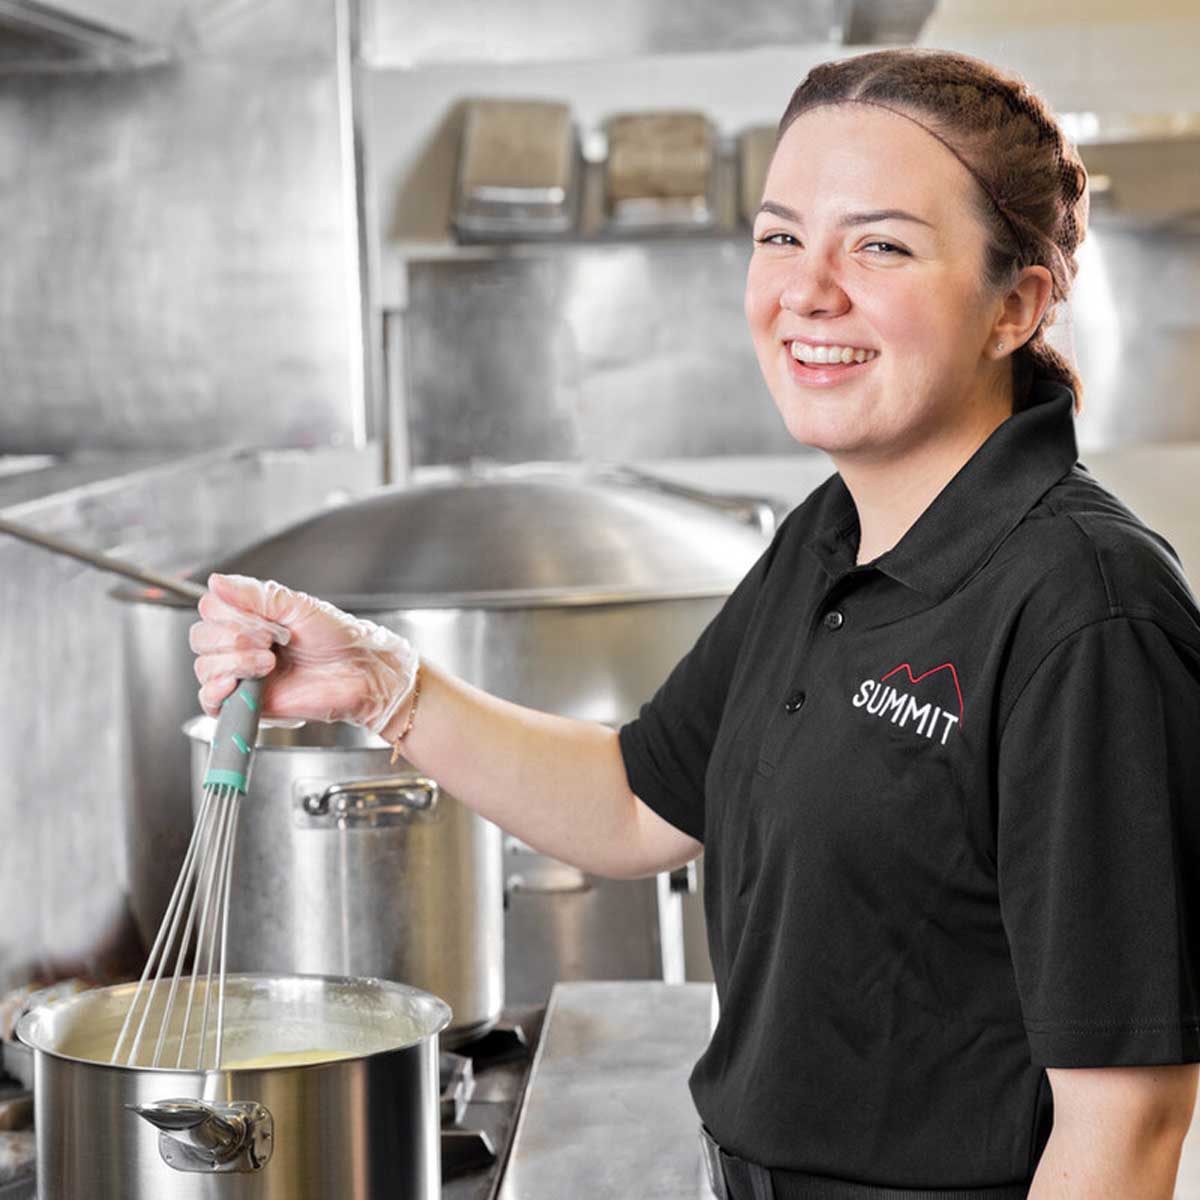 Employee smiling while stirring pot